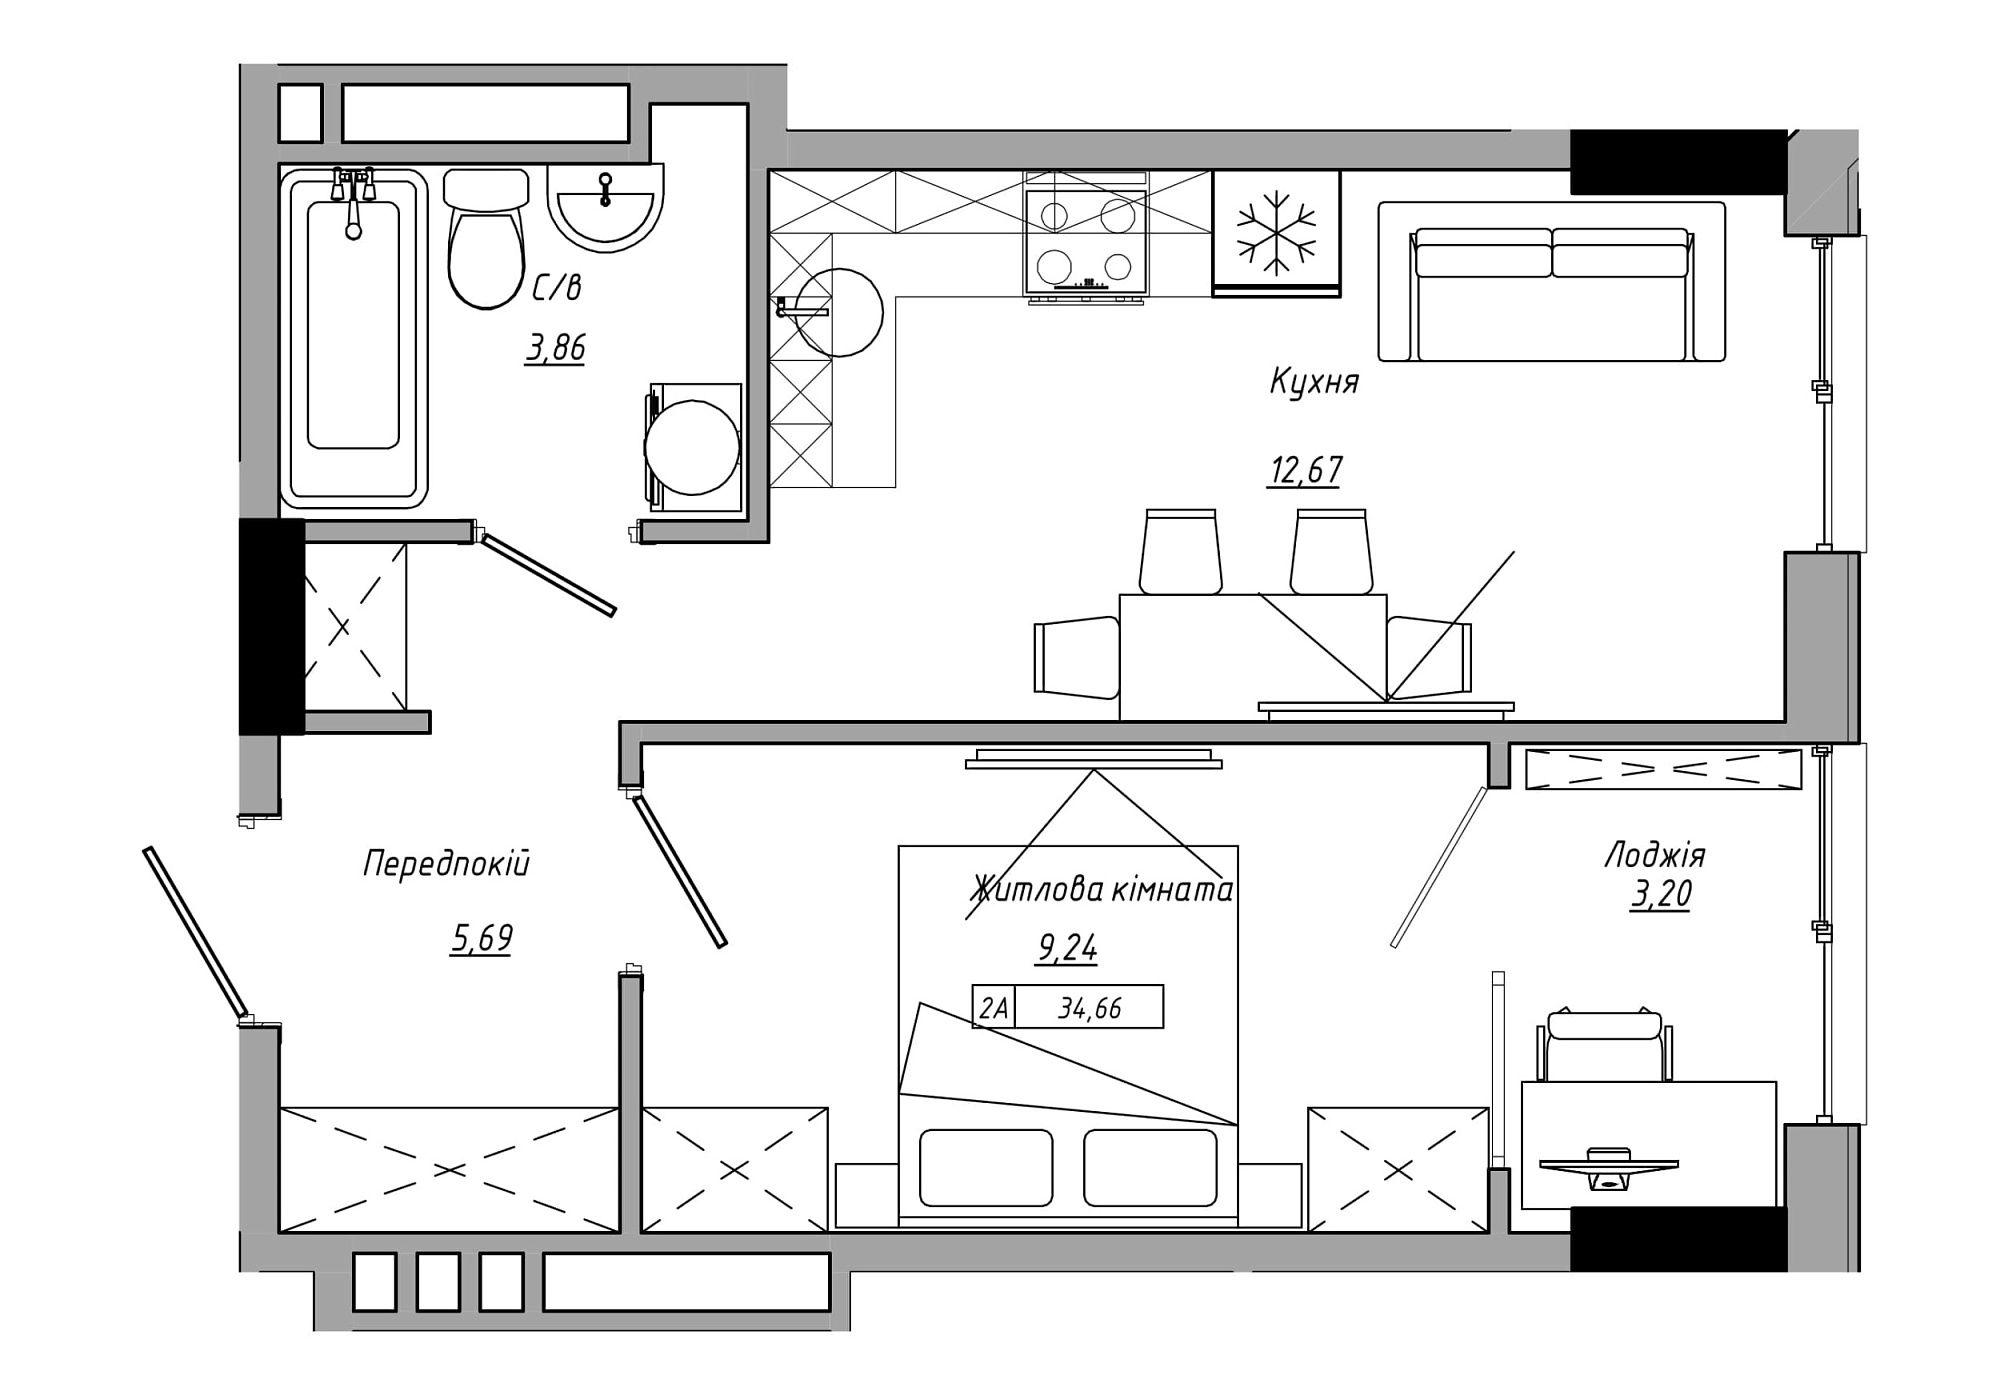 Планировка 1-к квартира площей 34.66м2, AB-21-12/00002.